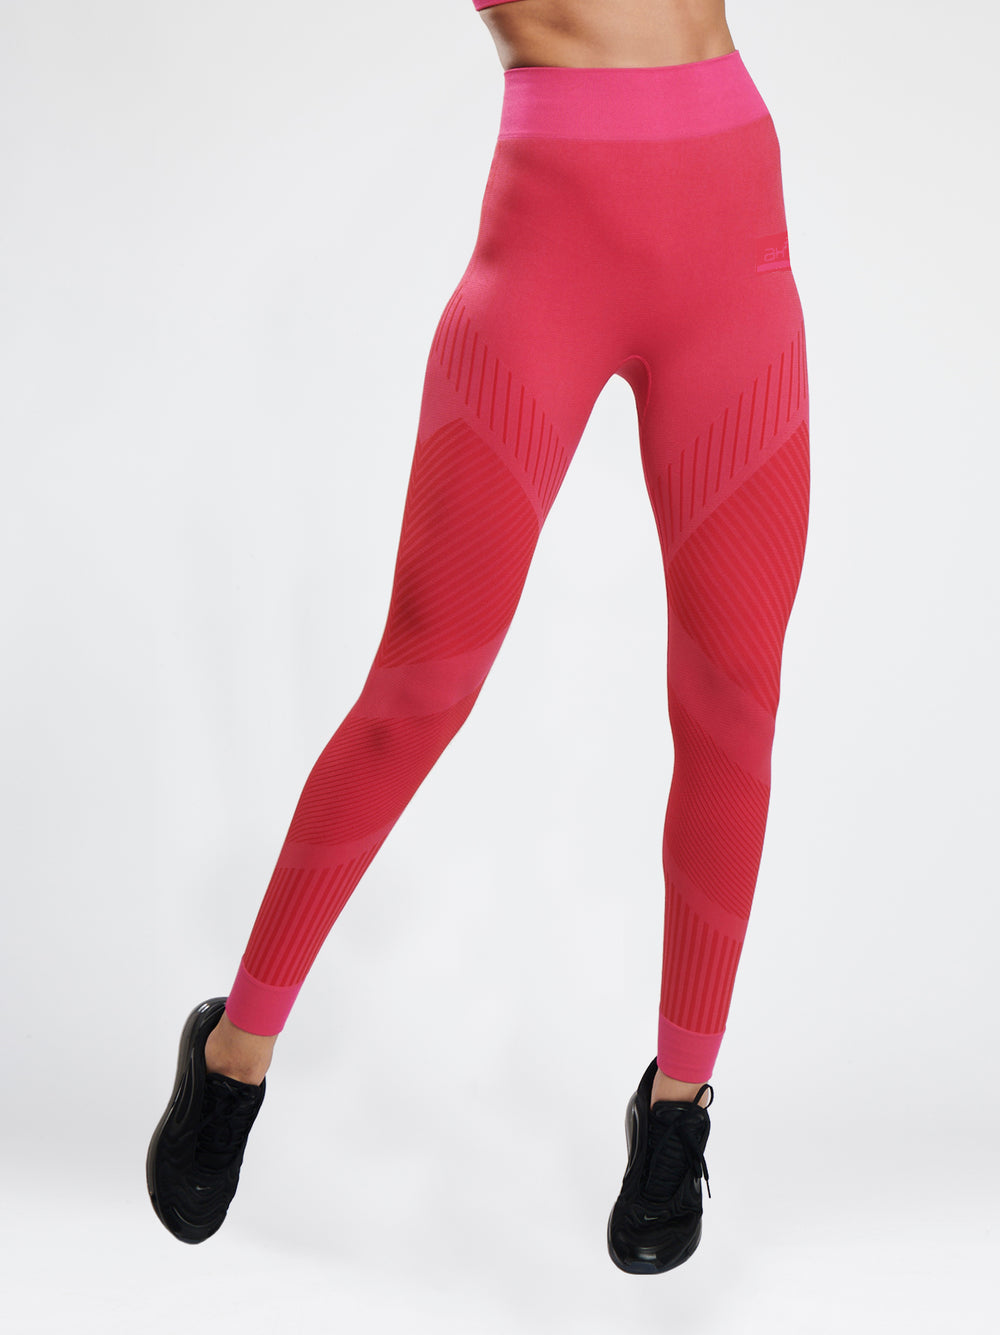 high waist flow legging in poppy pink